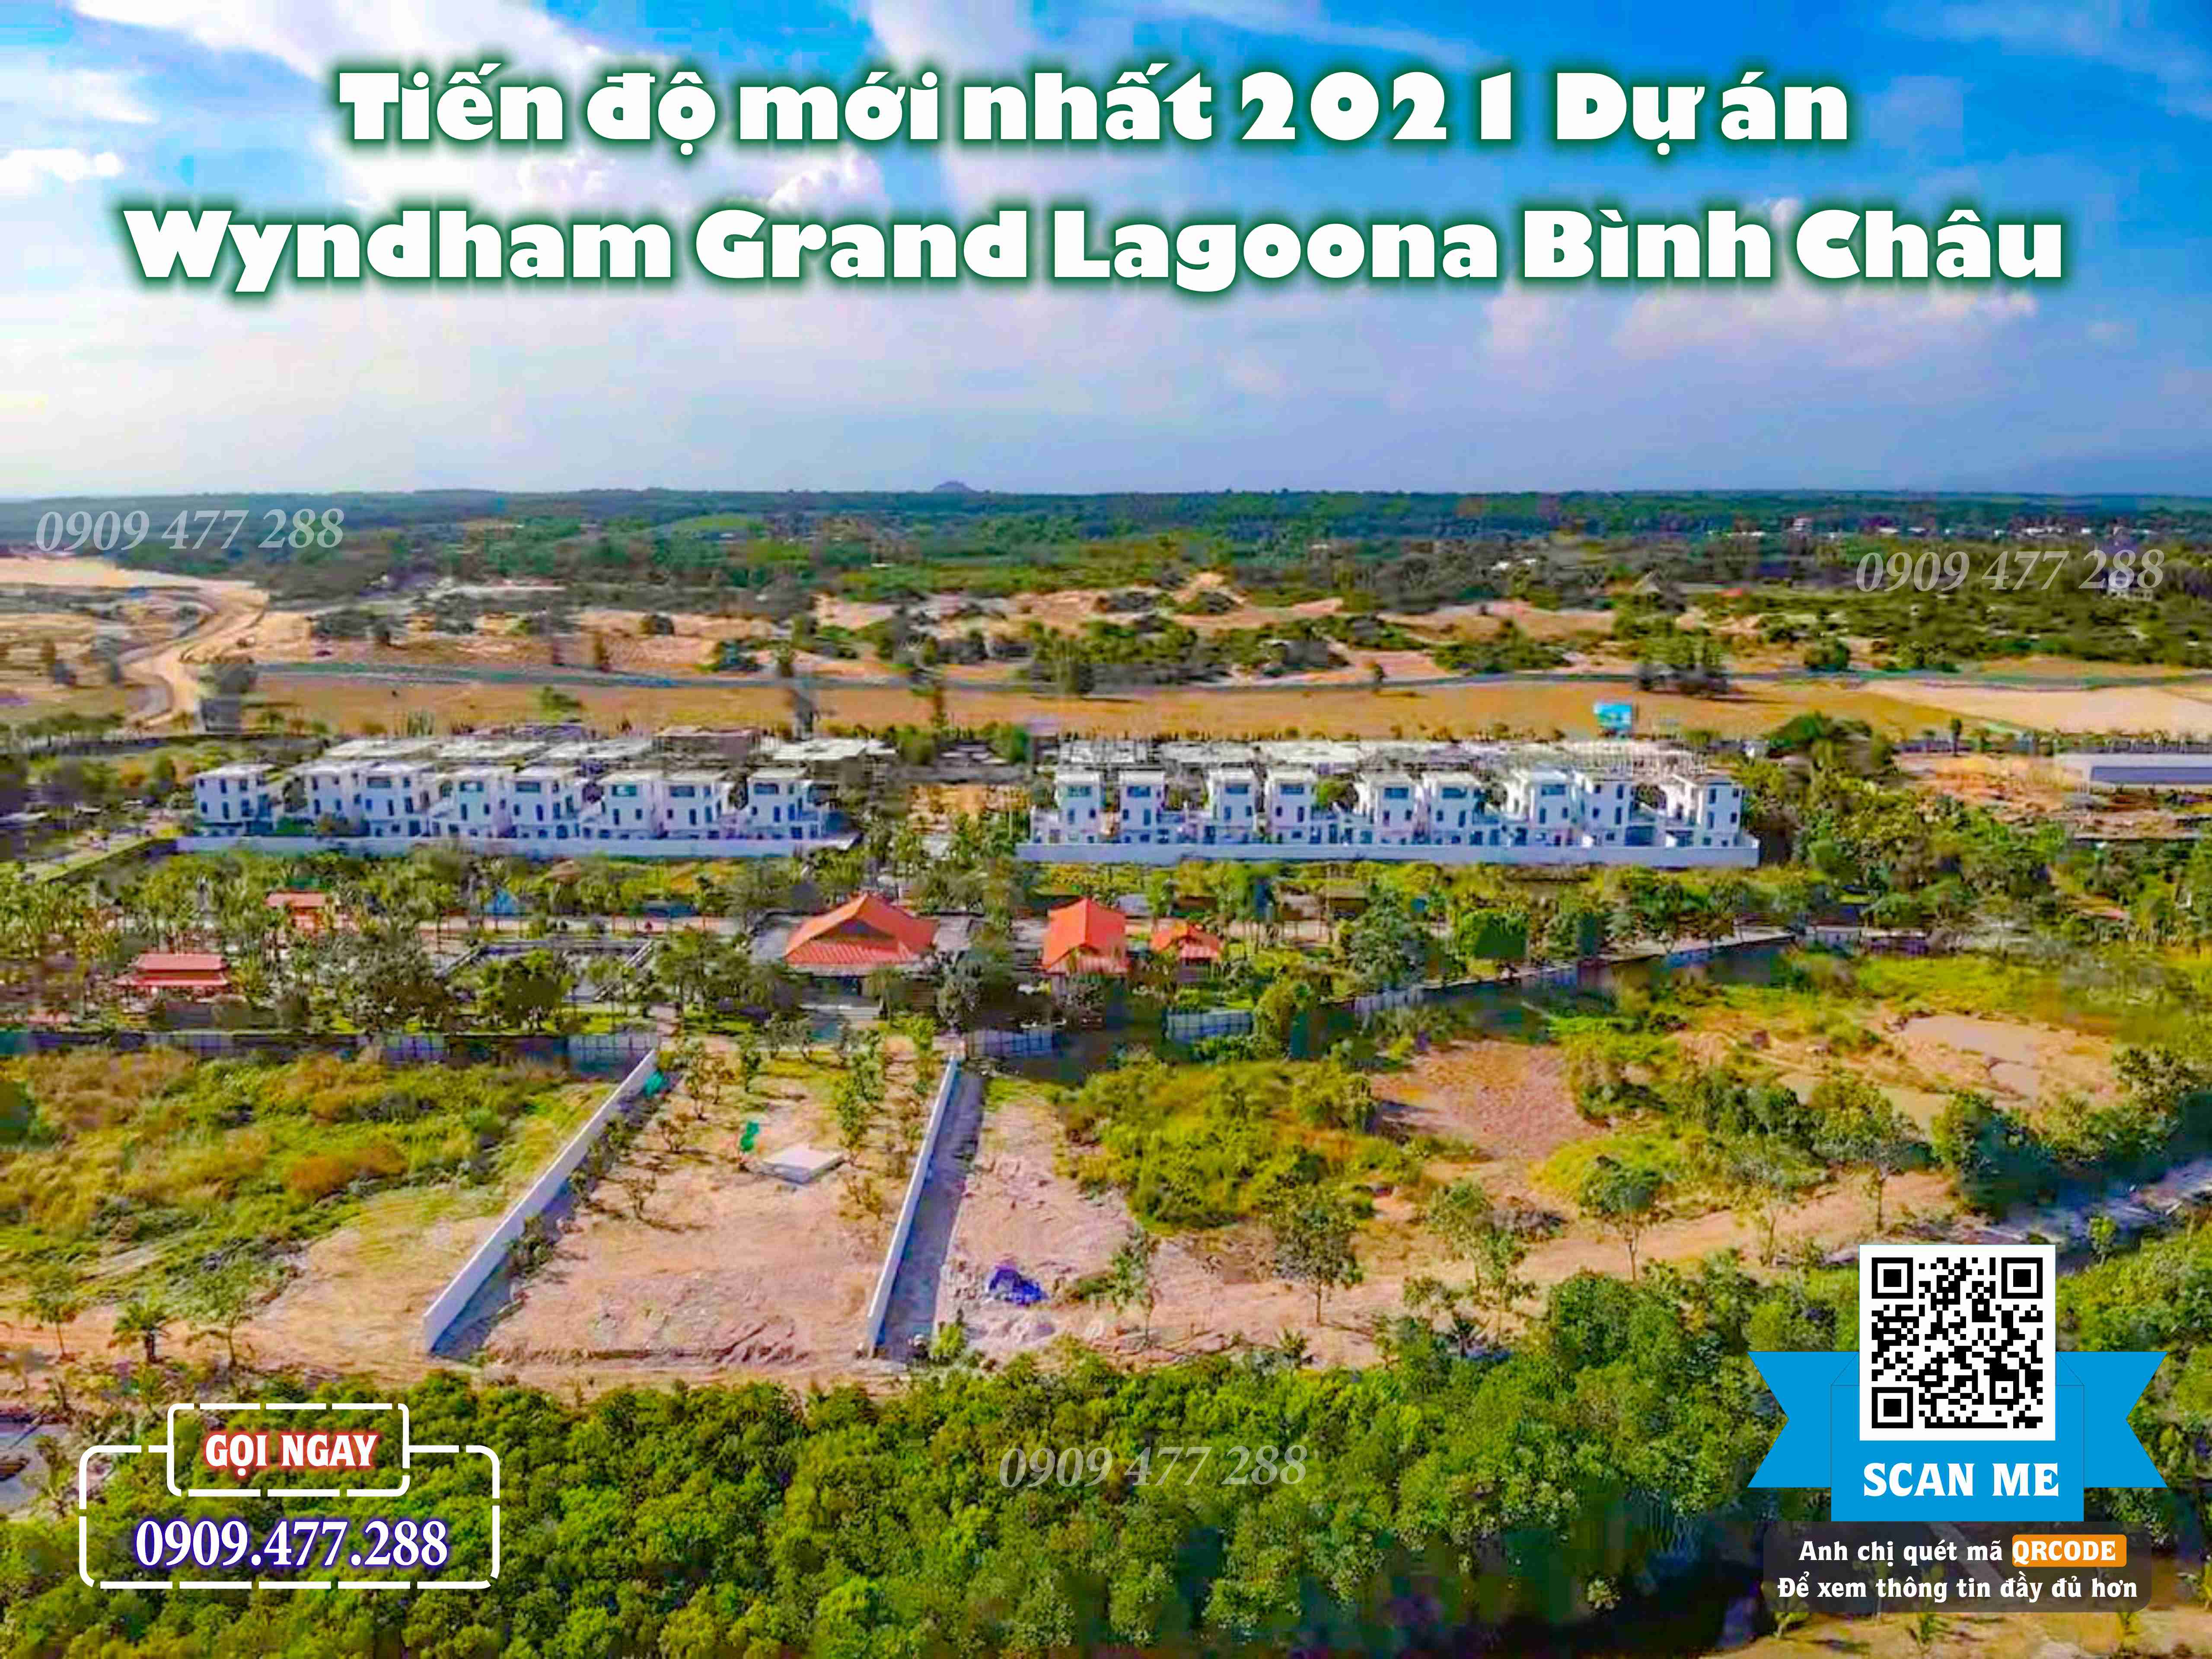 Wyndham Grand Lagoona Bình Châu (3)